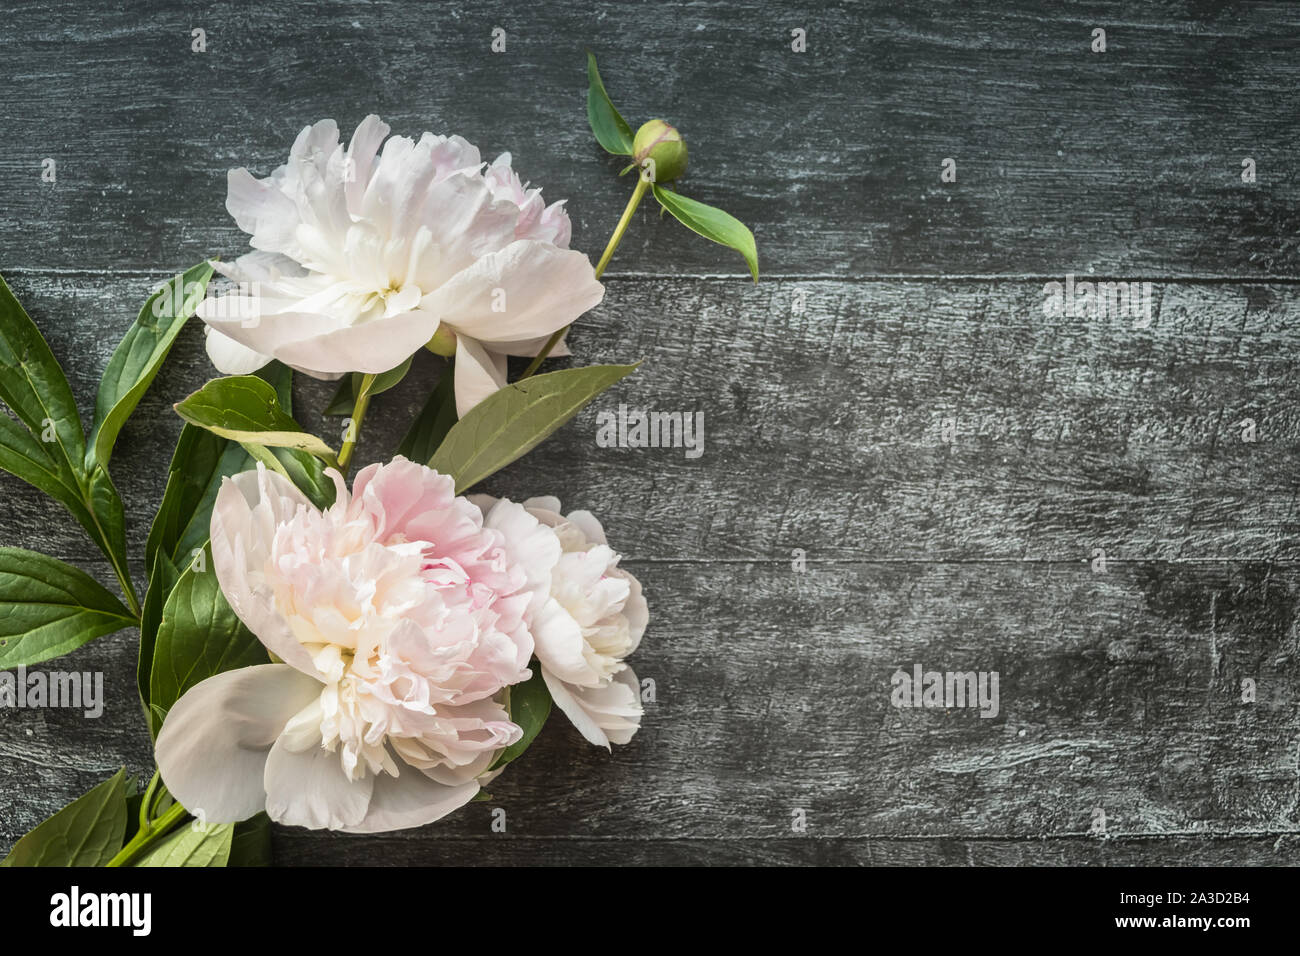 Gentle peonies on dark wooden background with copyspace Stock Photo